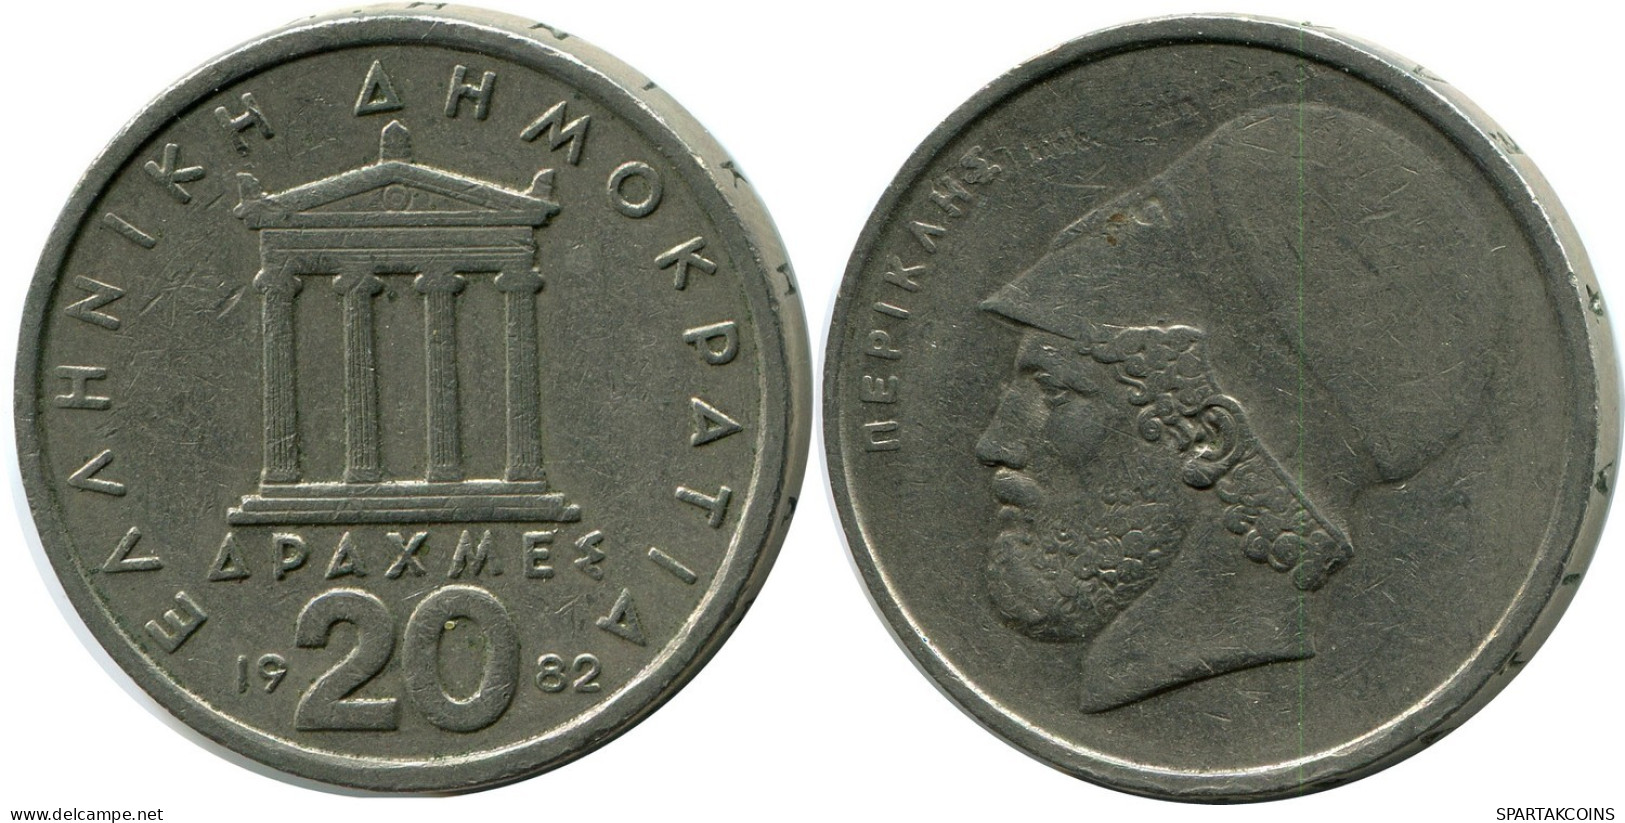 20 DRACHMES 1982 GRECIA GREECE Moneda #AZ324.E.A - Grecia